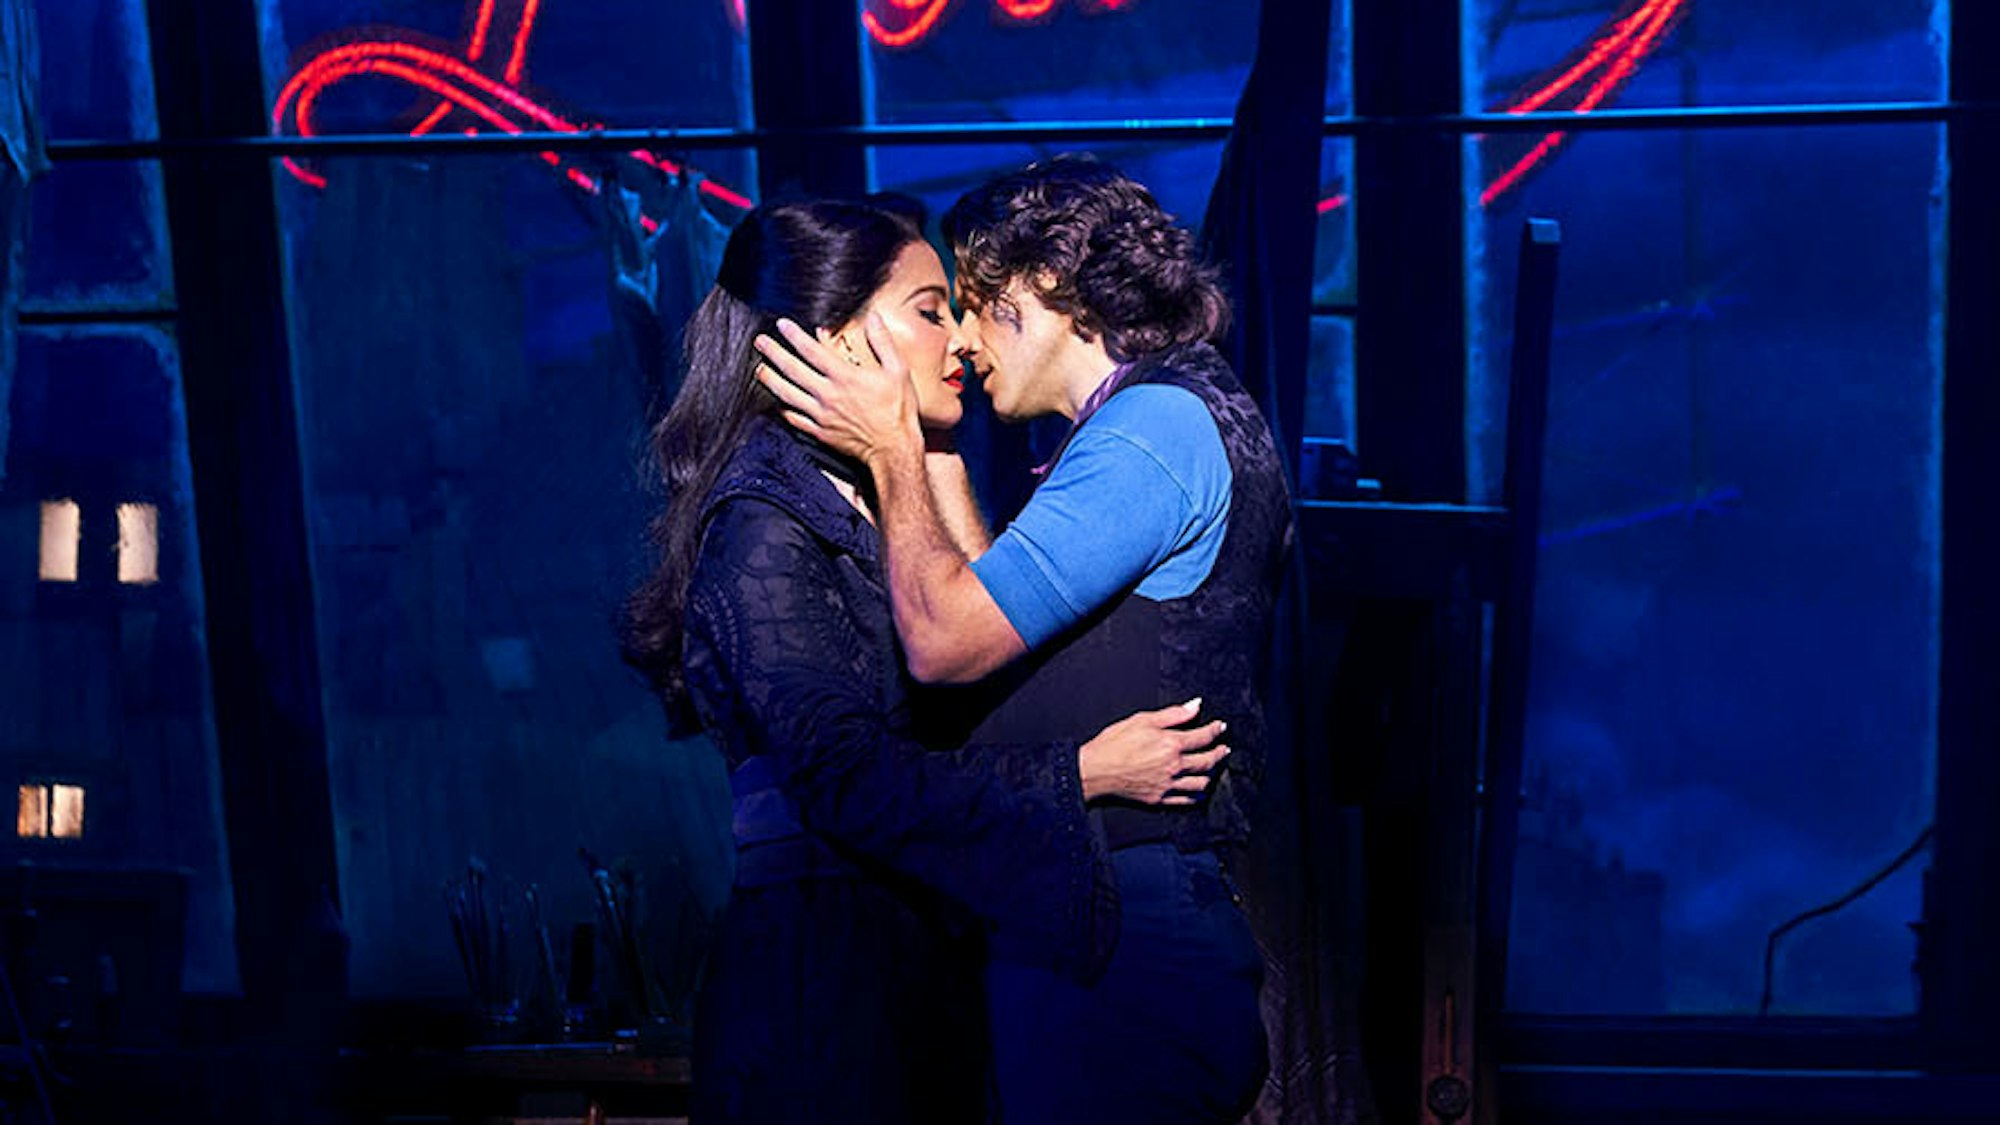 Die beiden Hauptdarsteller von Moulin Rouge küssen sich vor dem abendlichen Hintergrund mit Mühle und rotem Licht.